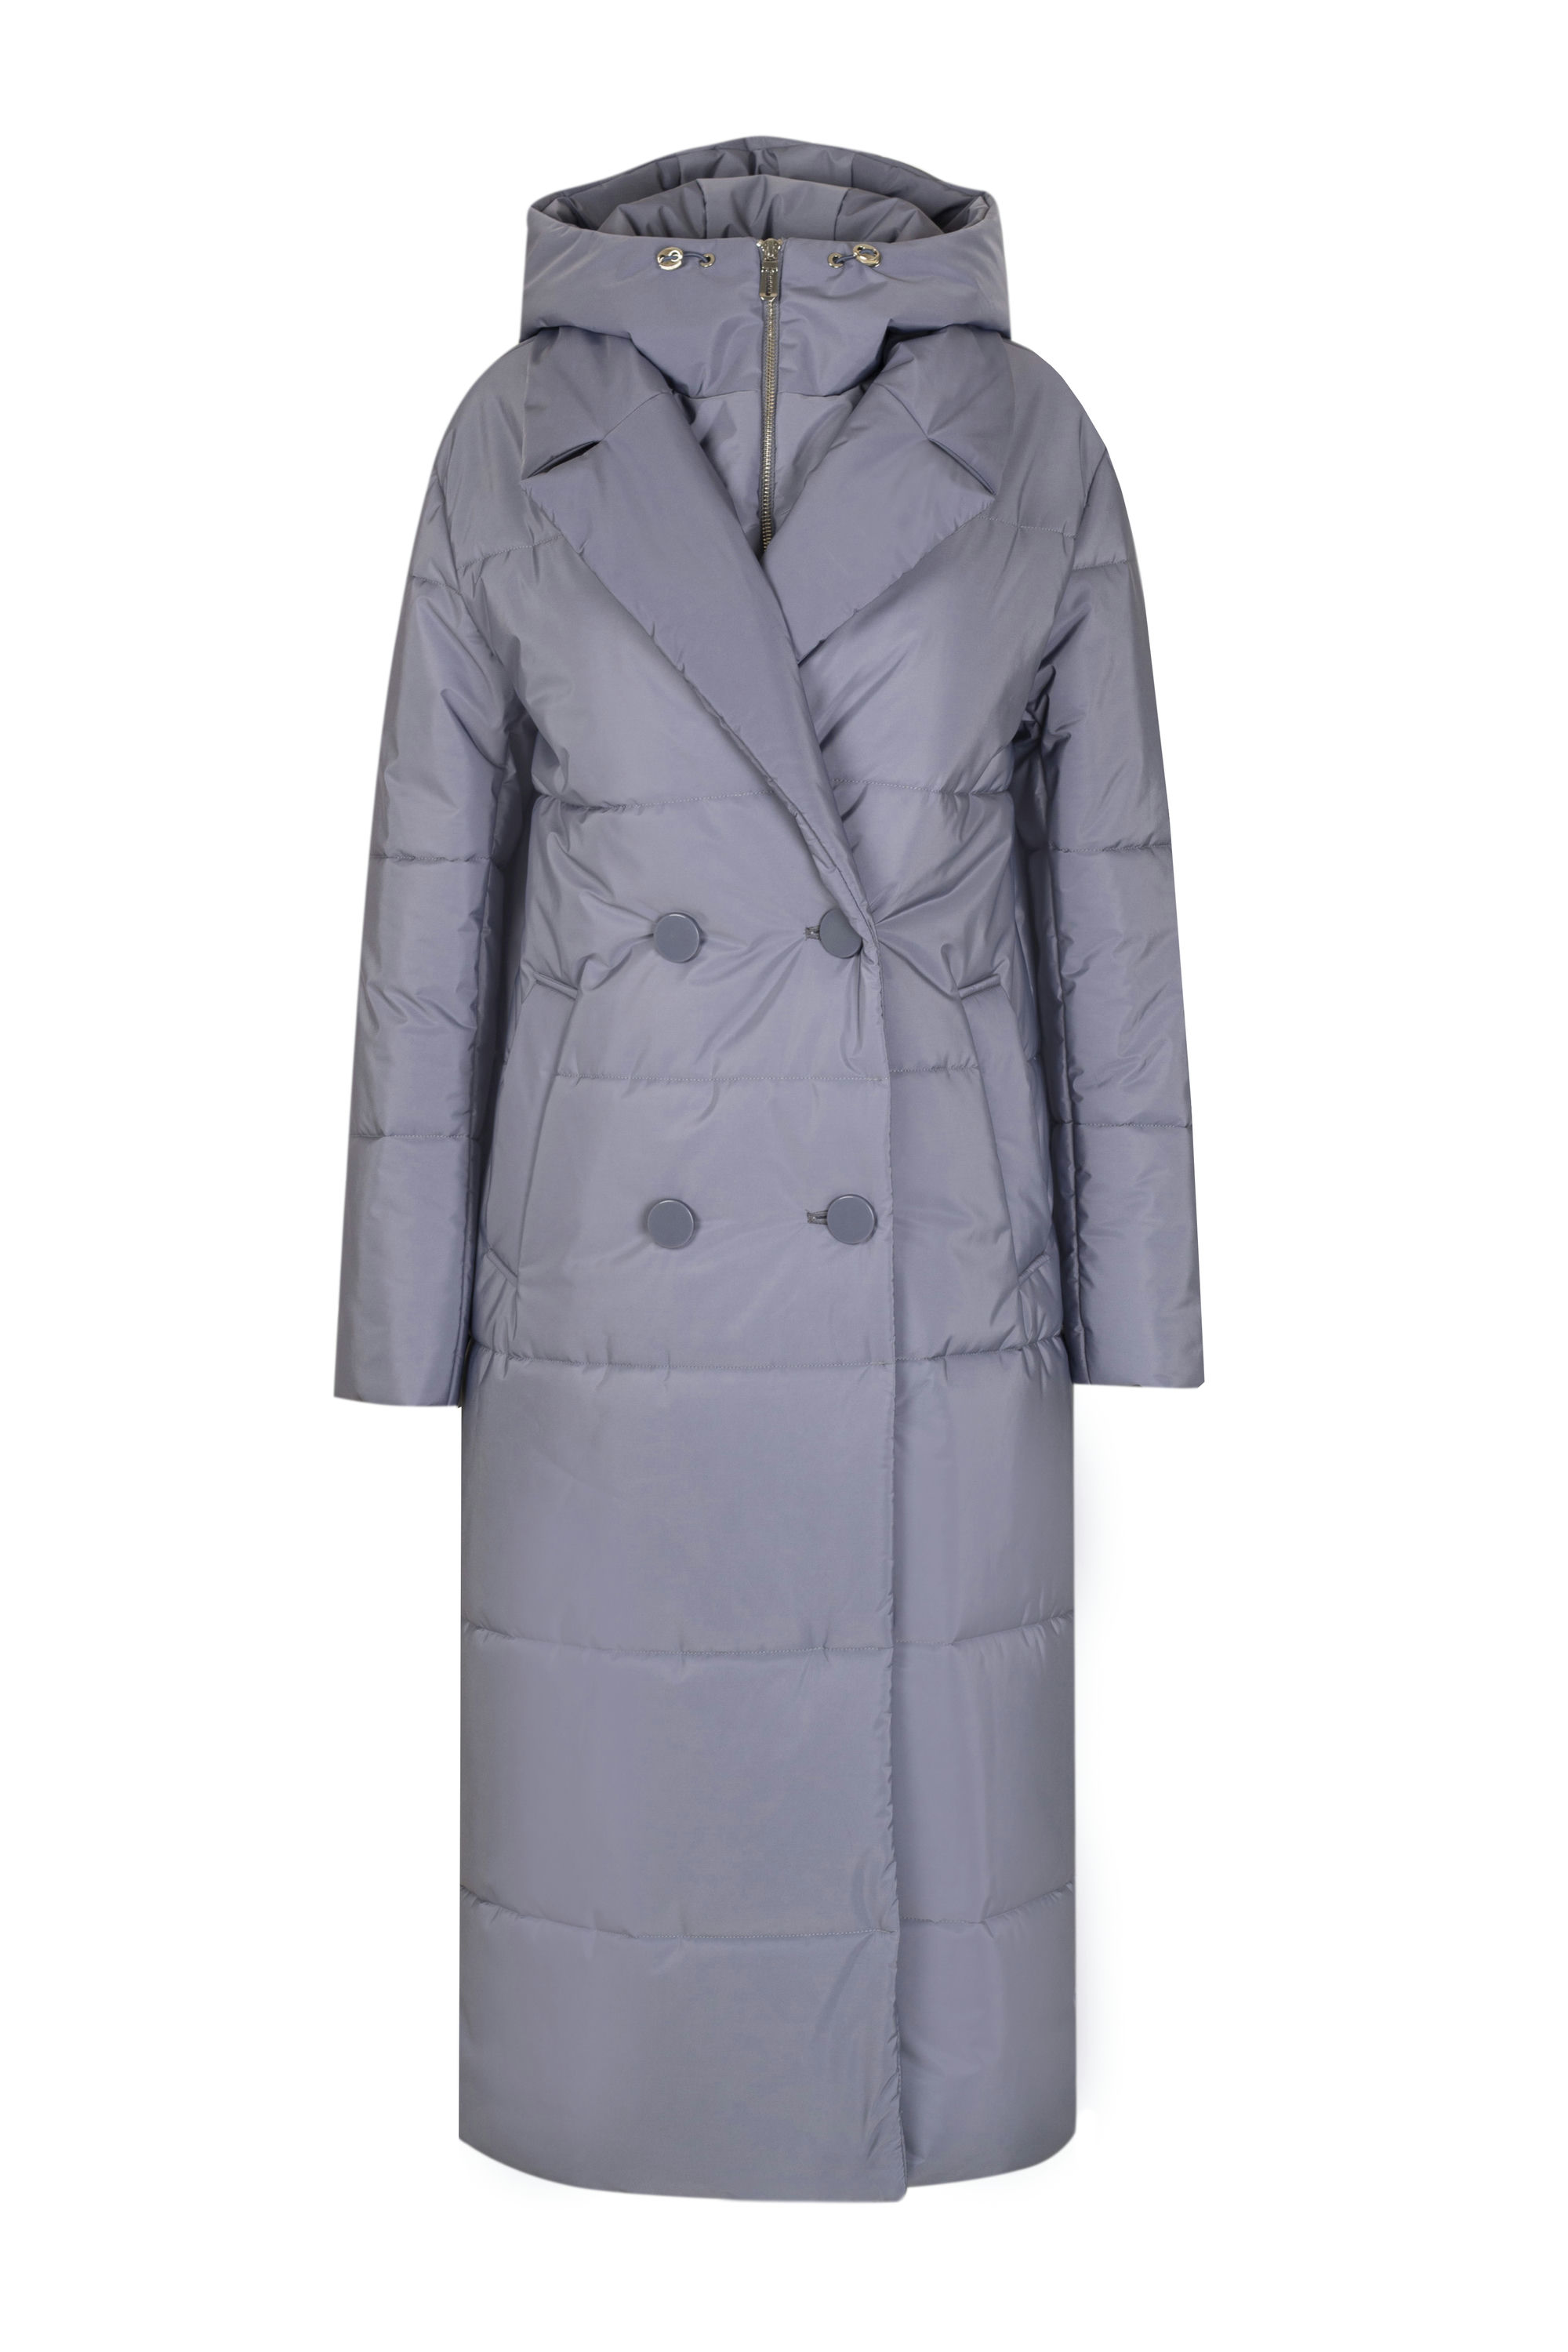 Пальто женское плащевое утепленное 5-12374-1